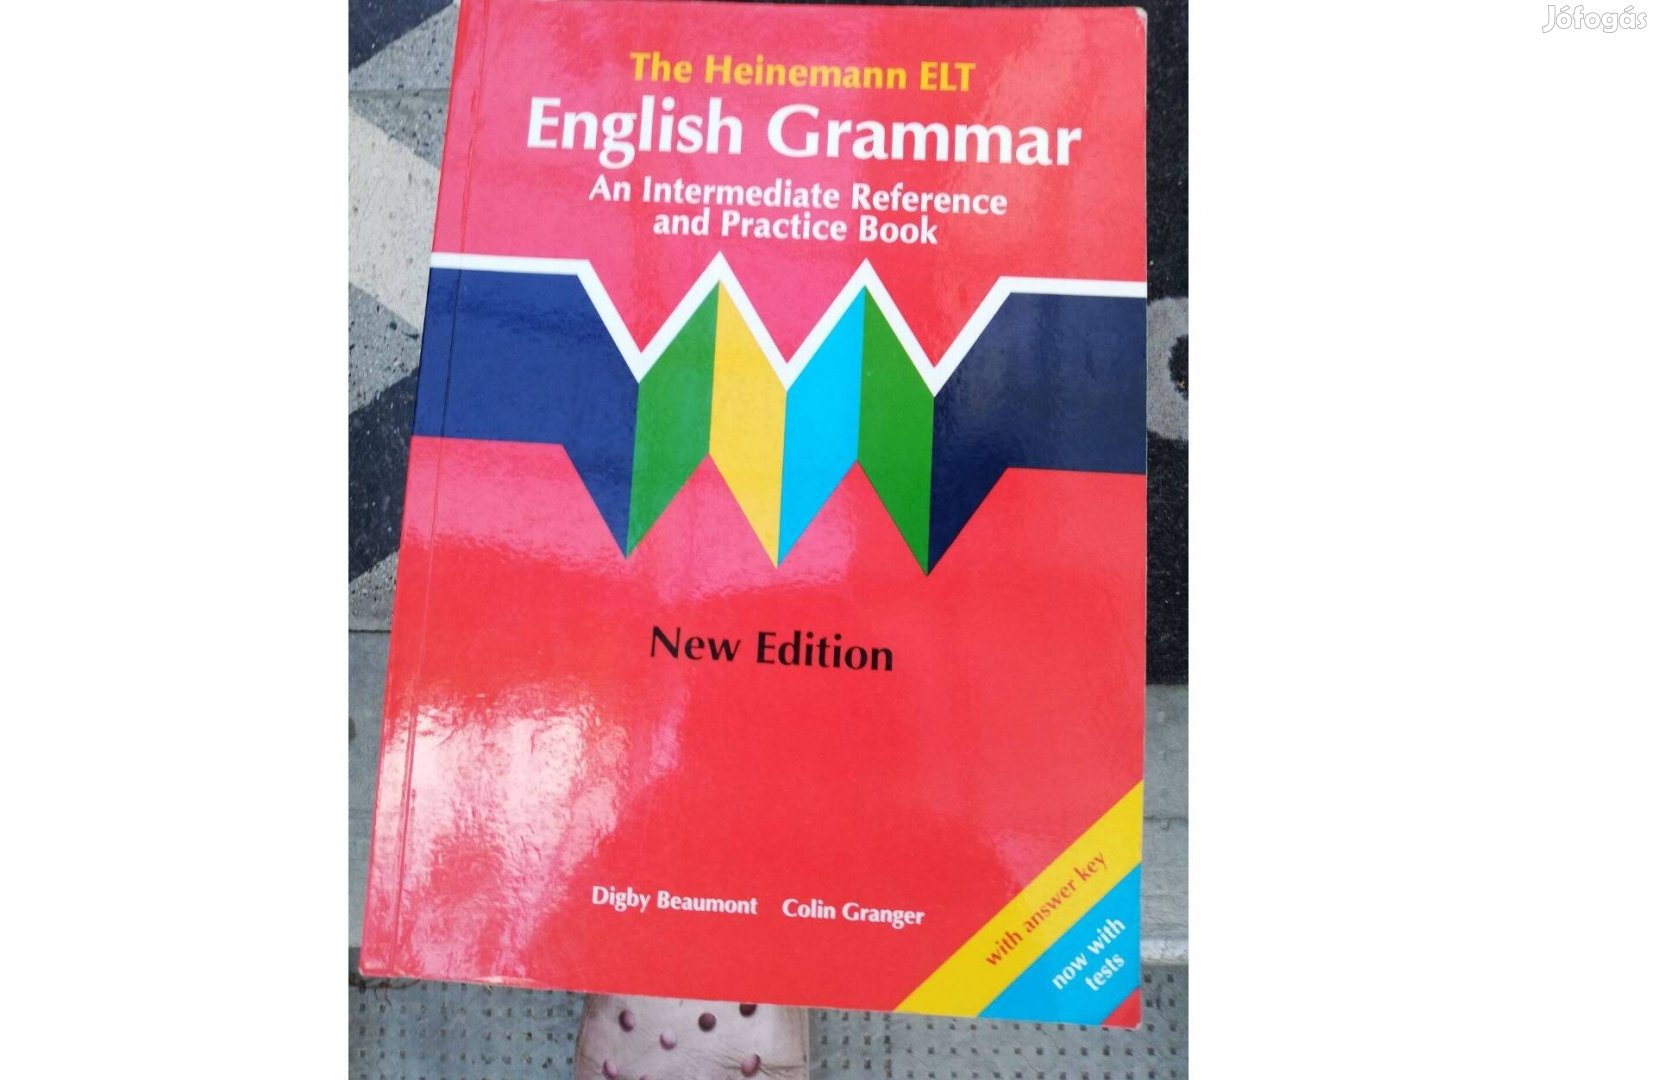 Colin Granger - The Heinemann Elit - English Grammar